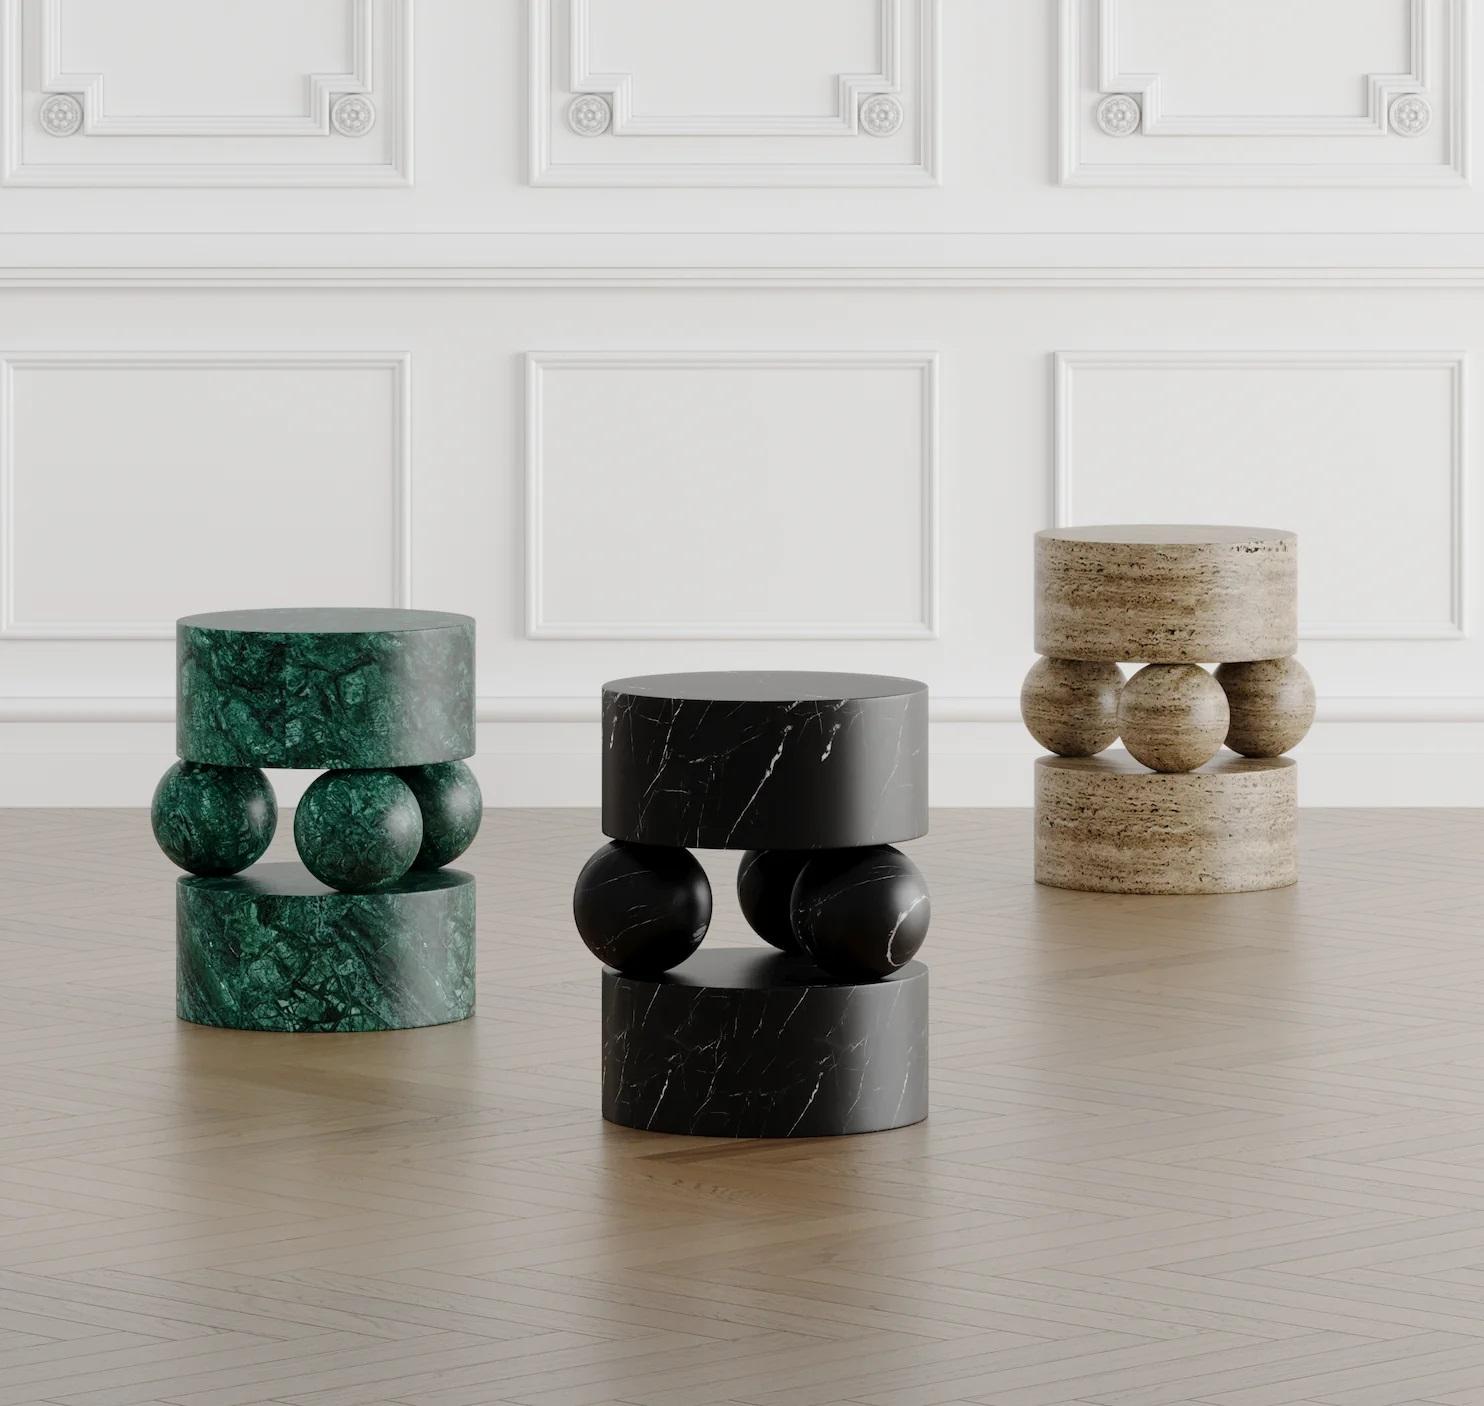 Wir stellen den Osaka Marmor-Beistelltisch vor - eine harmonische Verschmelzung von Kunstfertigkeit und Funktionalität, die über gewöhnliche Möbel hinausgeht. Sorgfältig von Hand aus reinem Stein gemeißelt, ist er mit seinen klaren Linien, seiner